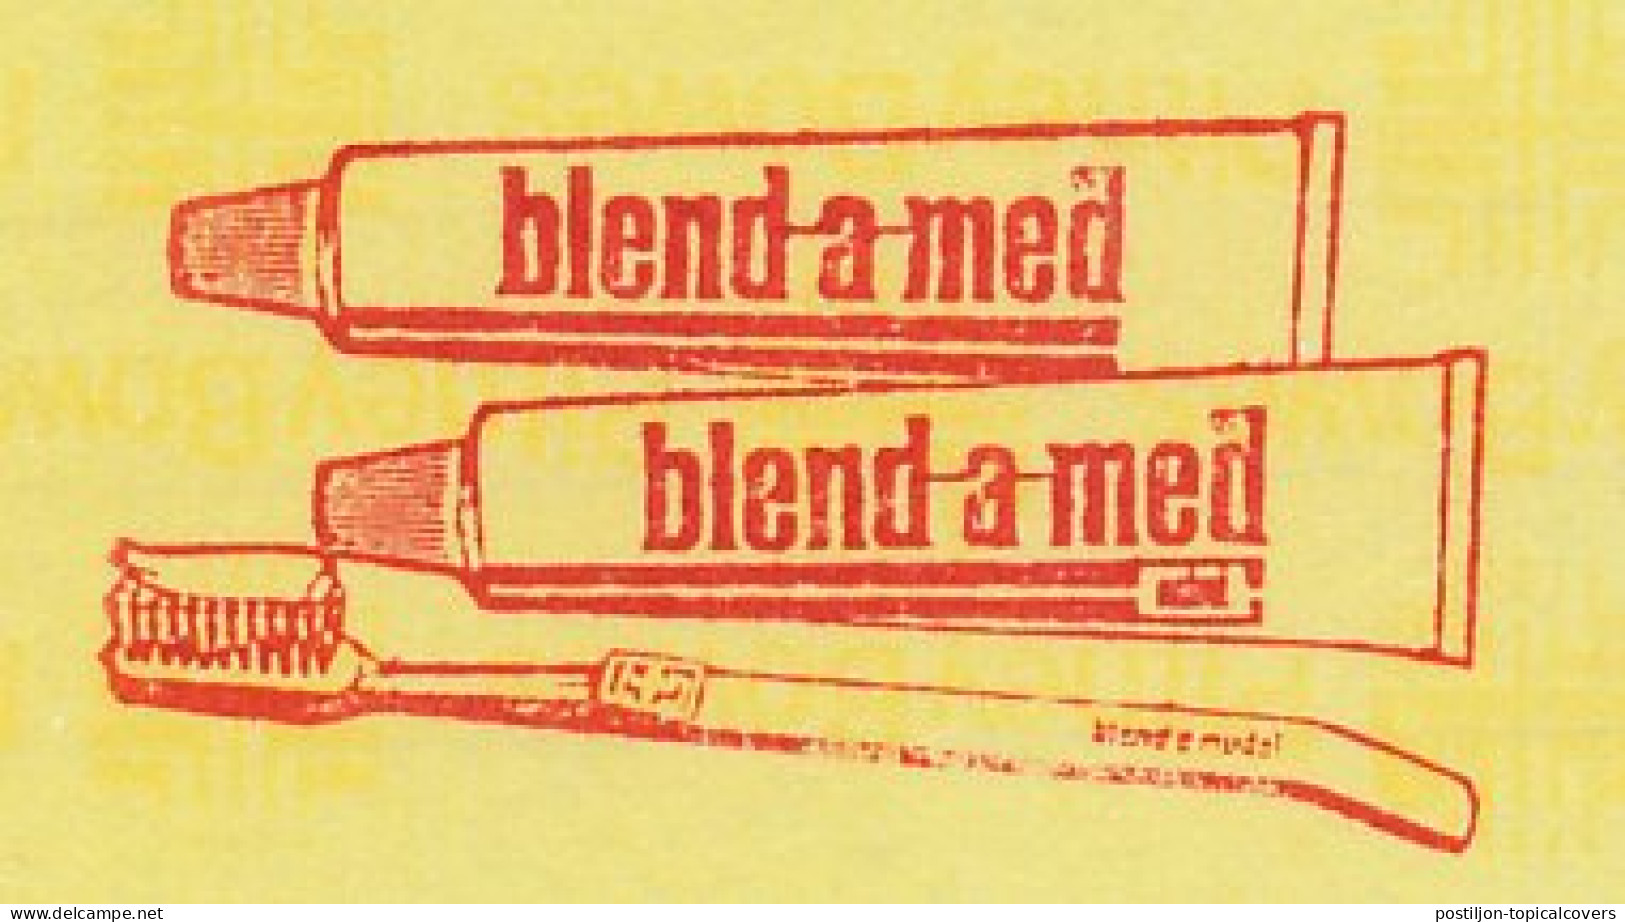 Meter Proof / Test Strip Netherlands 1982 Toothpaste - Toothbrush - Blend A Med - Medicine